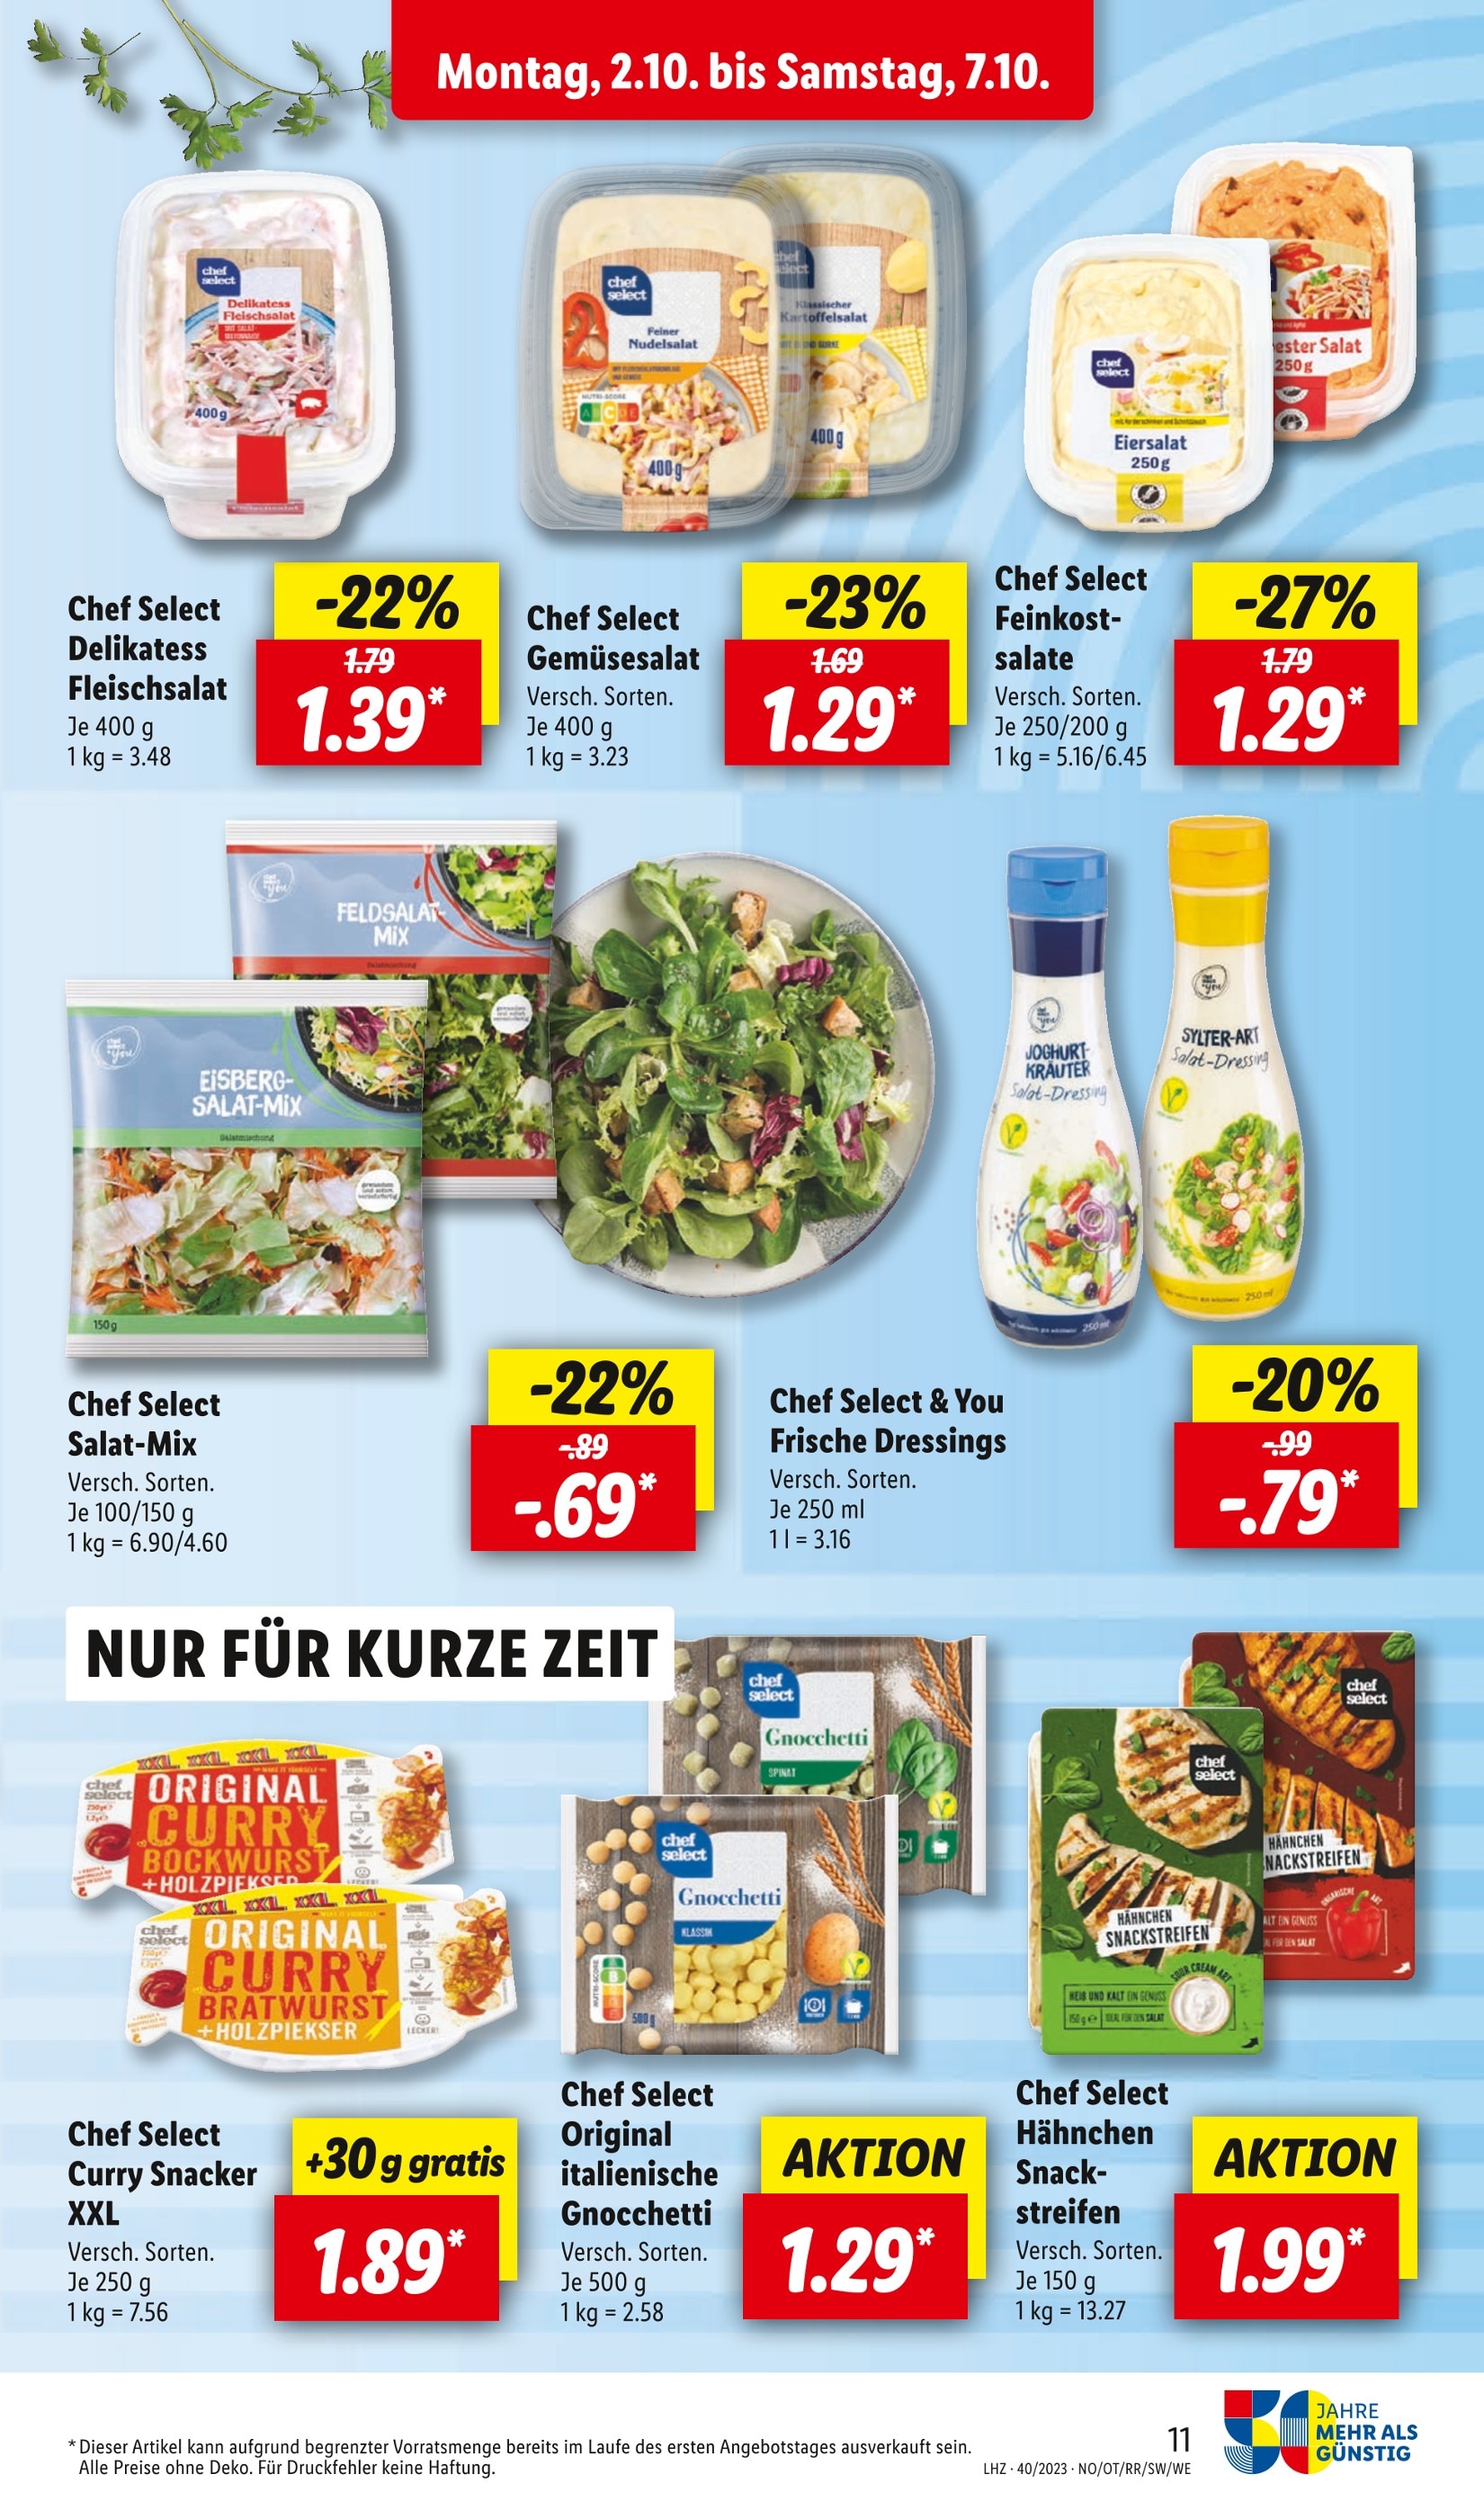 Kartoffelsalat kaufen in Heidelberg Heidelberg - Angebote günstige in